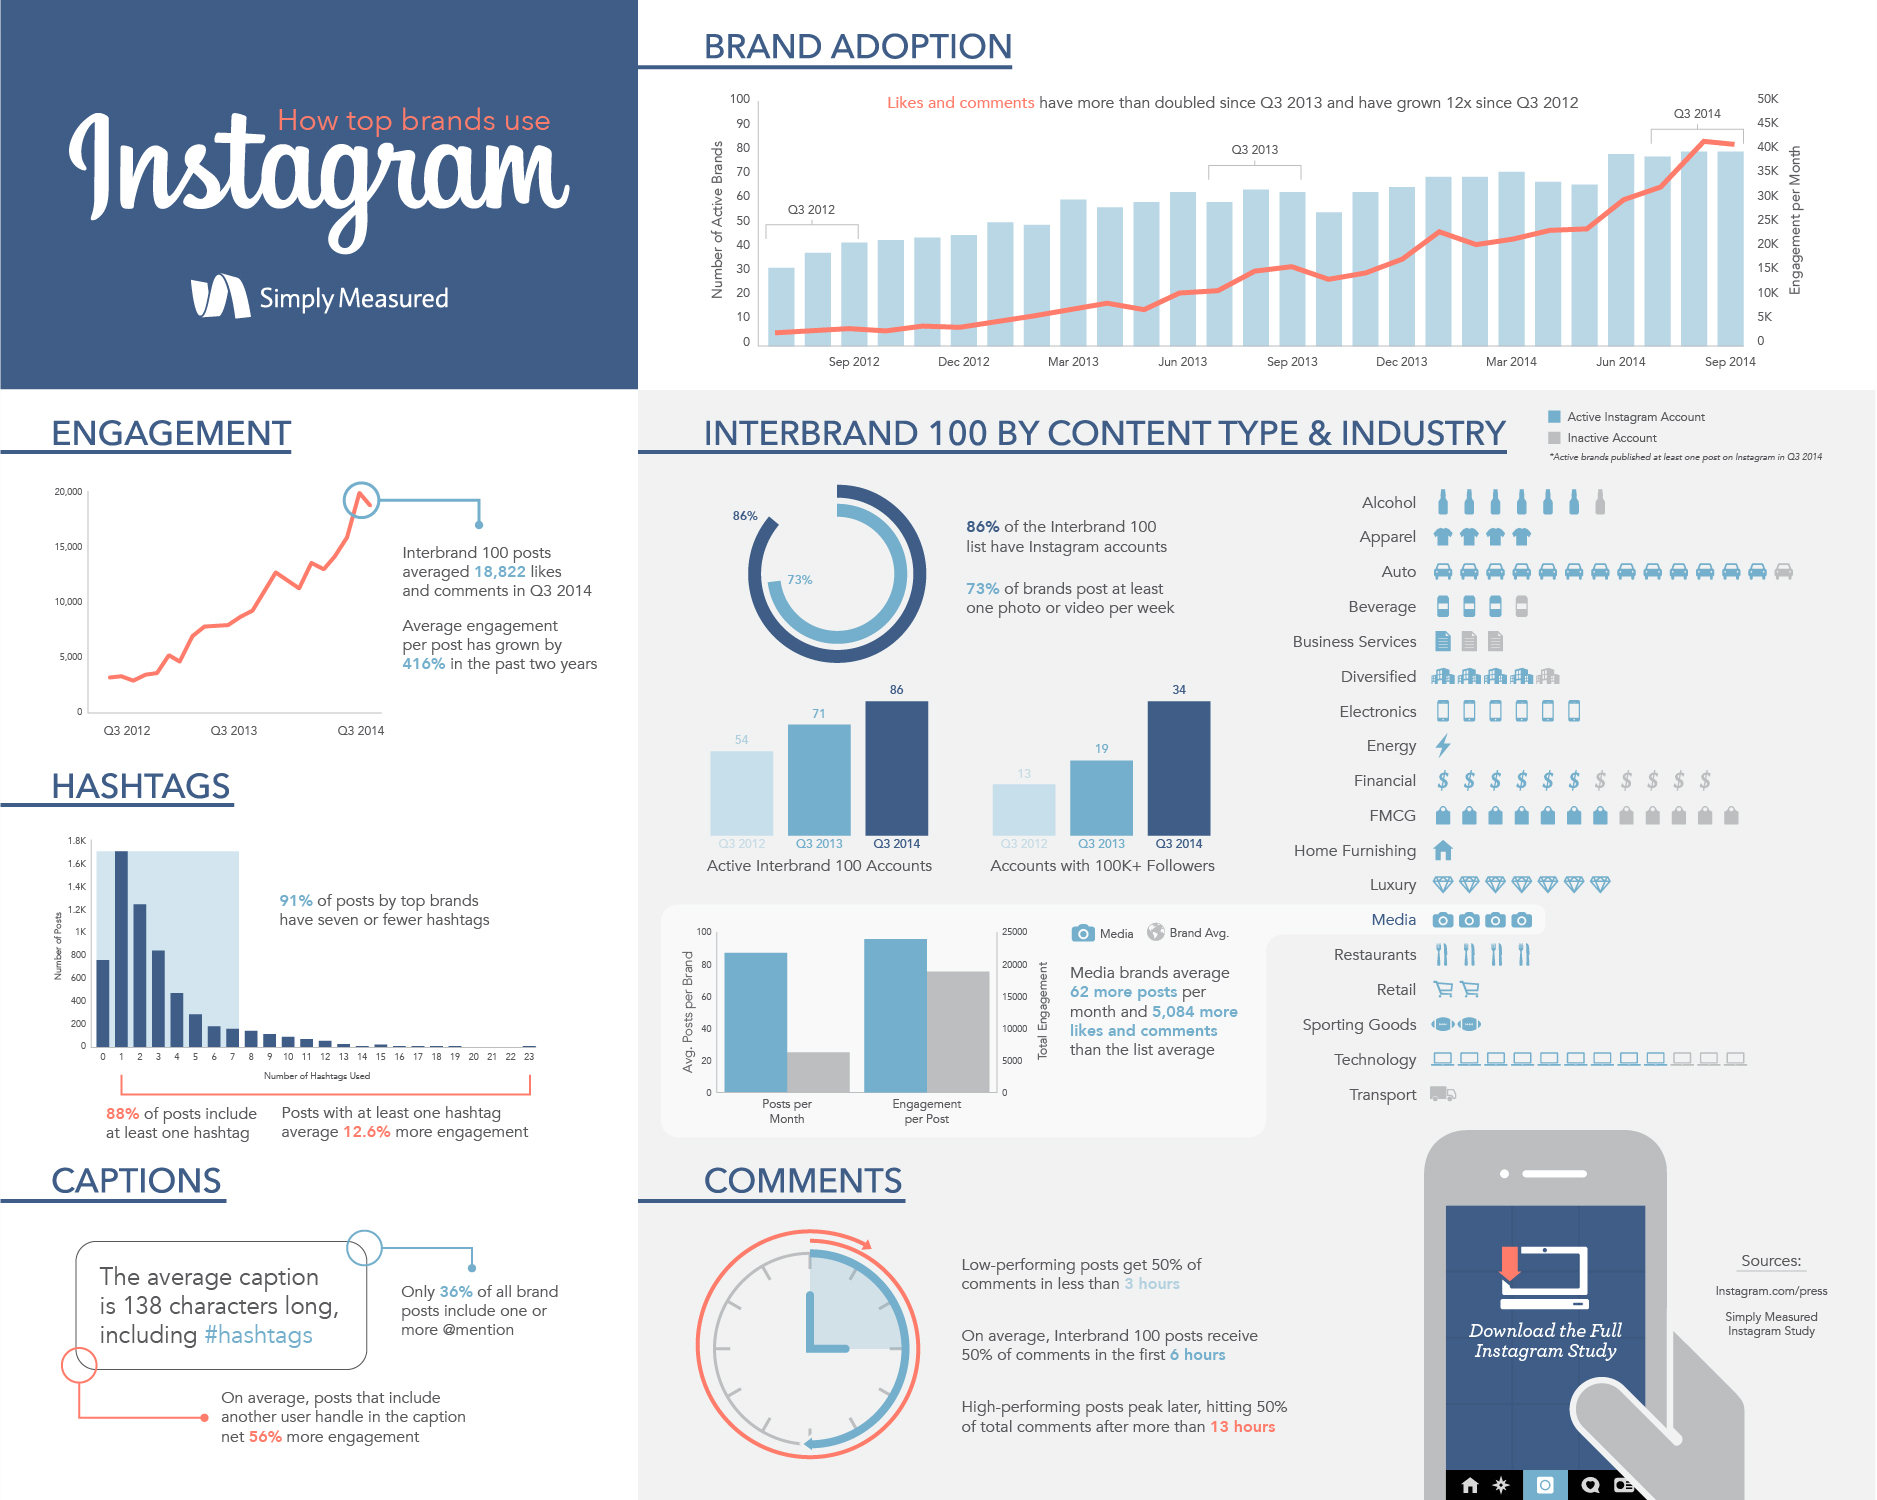 How Top Brands Use Instagram